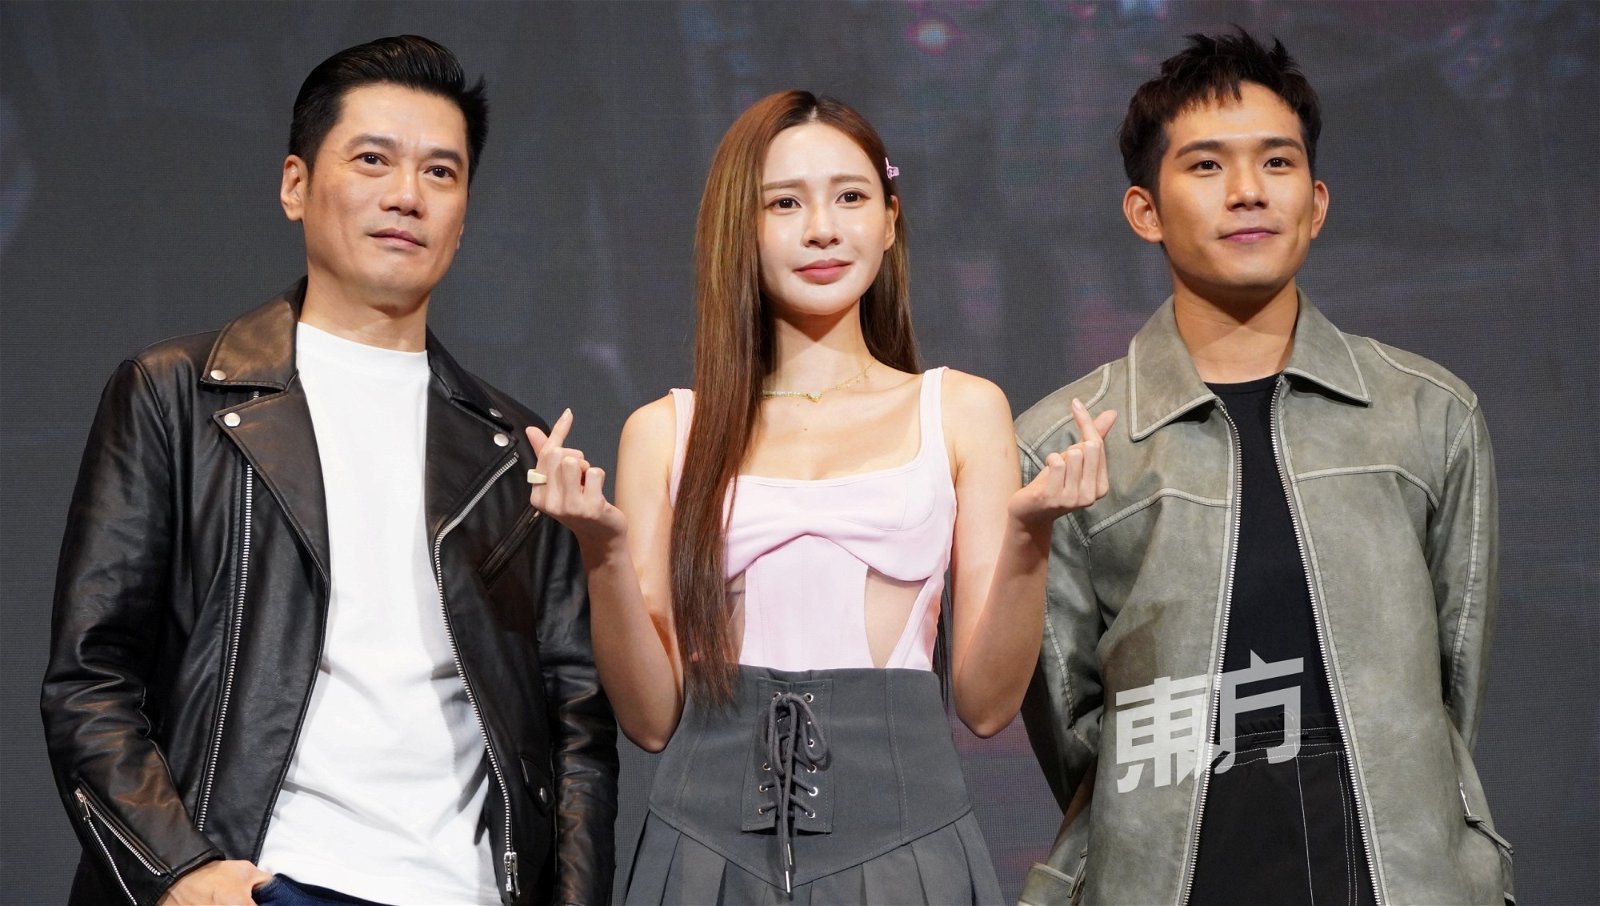 关德辉、Yumi Wong和培永也会参演。